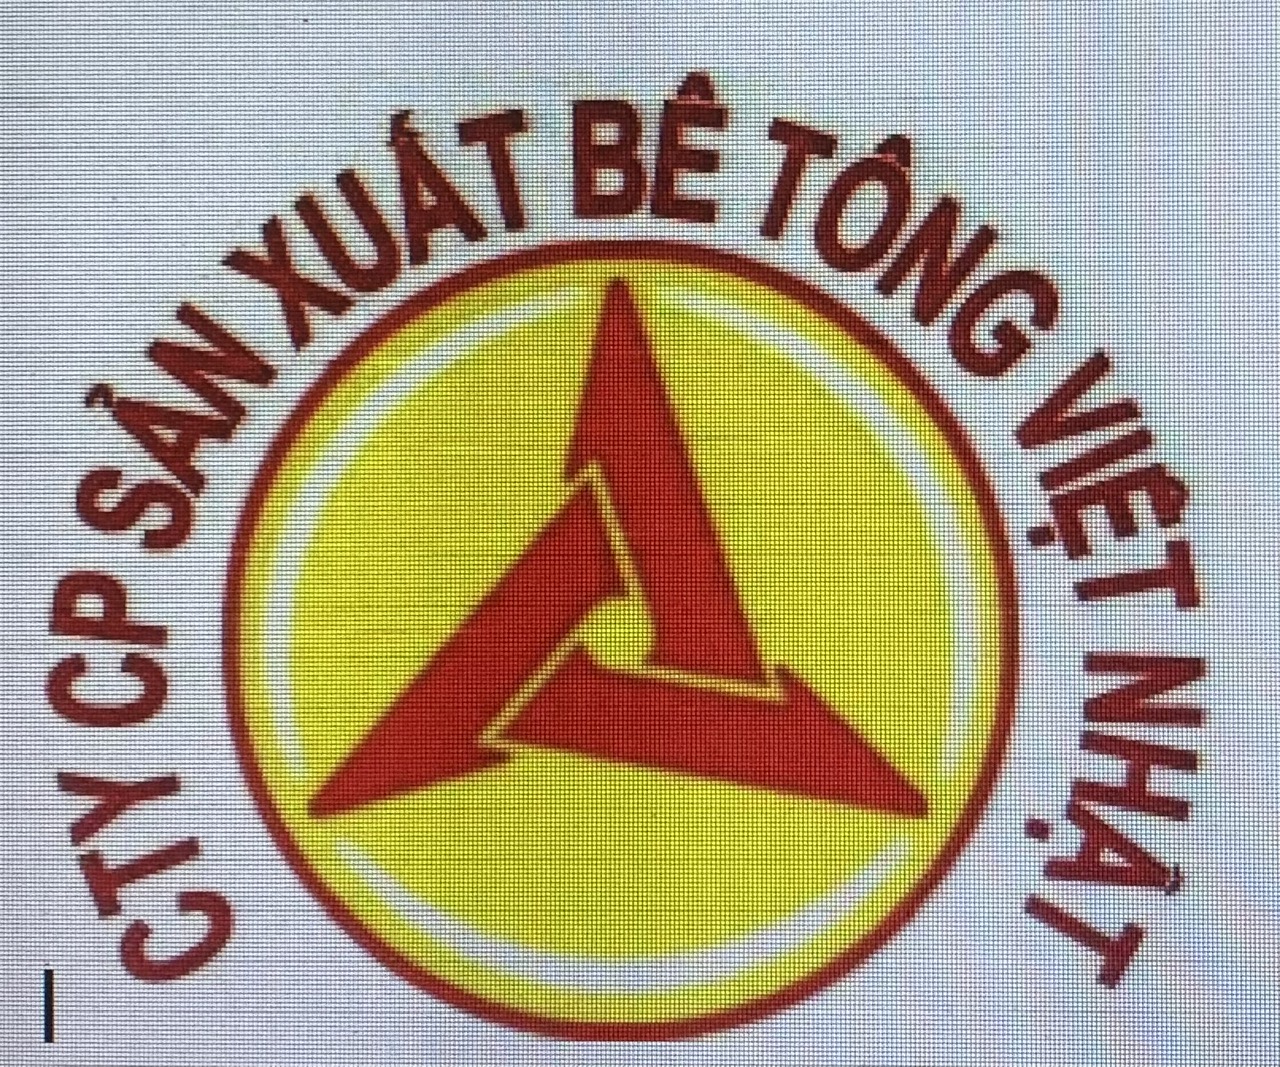 Công ty cổ phẩn sản xuất bê tông Việt Nhật